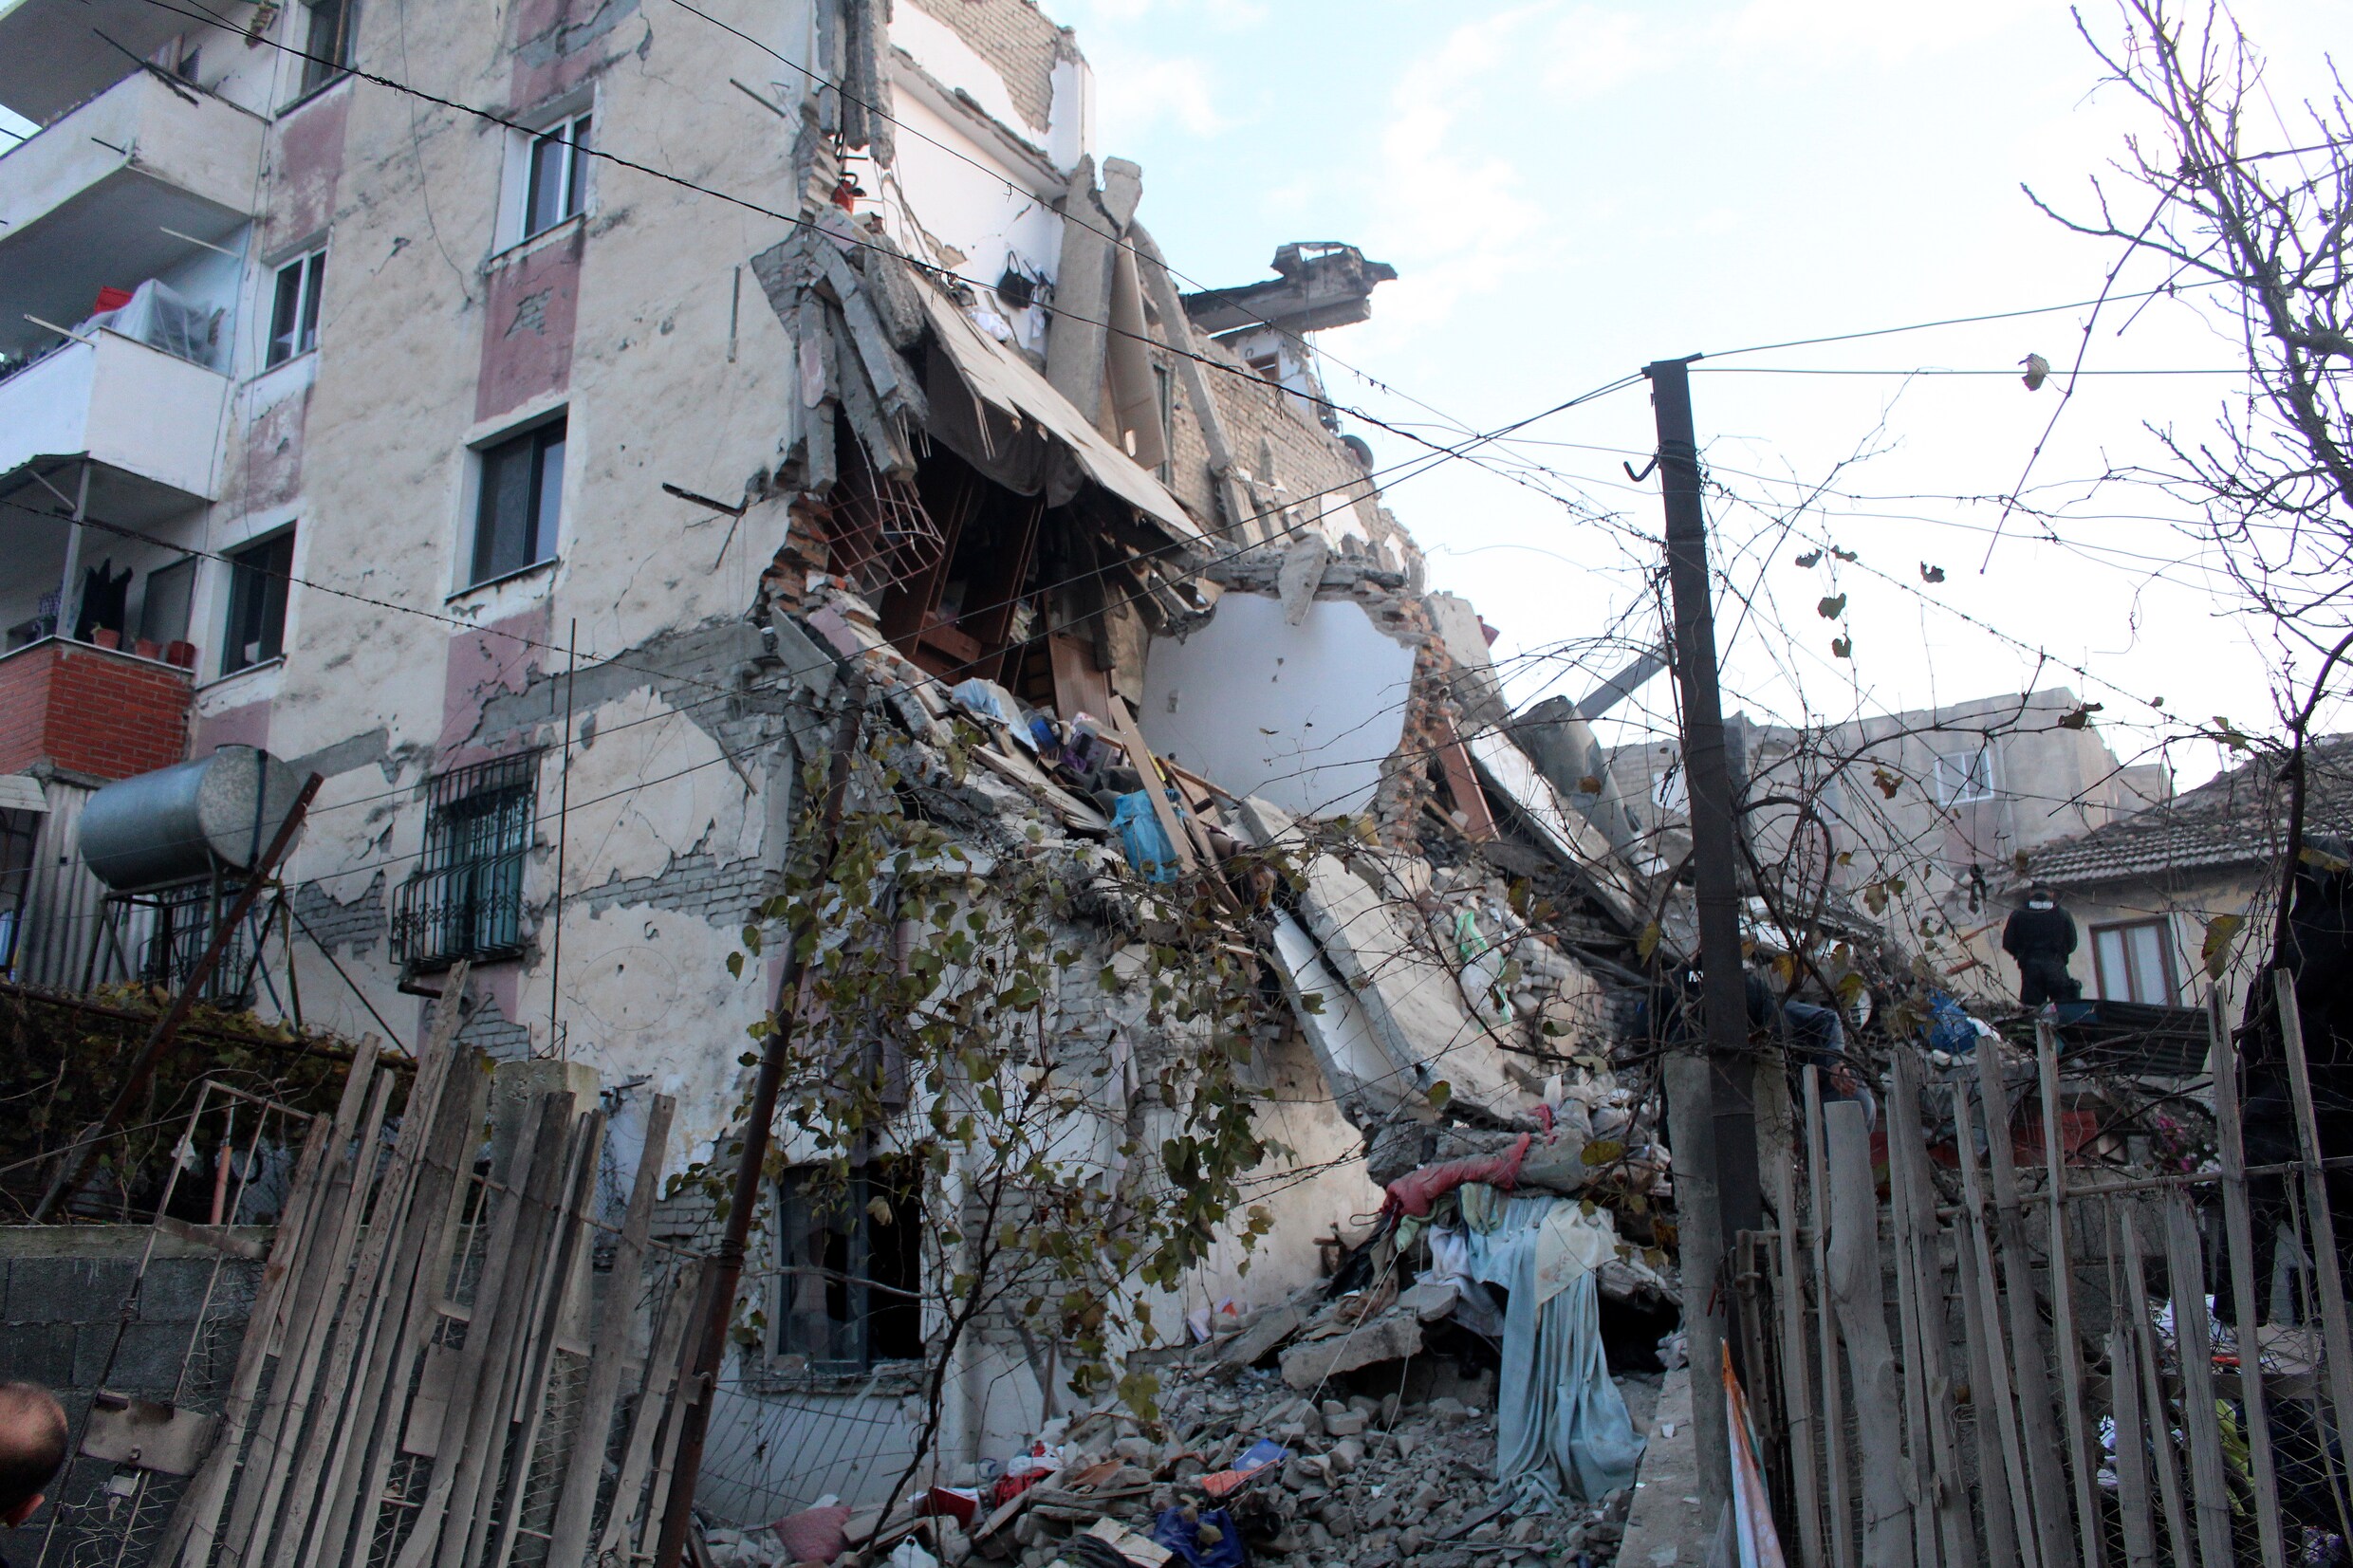 Dodental opgelopen tot 13 na zwaarste aardbeving in decennia in Albanië